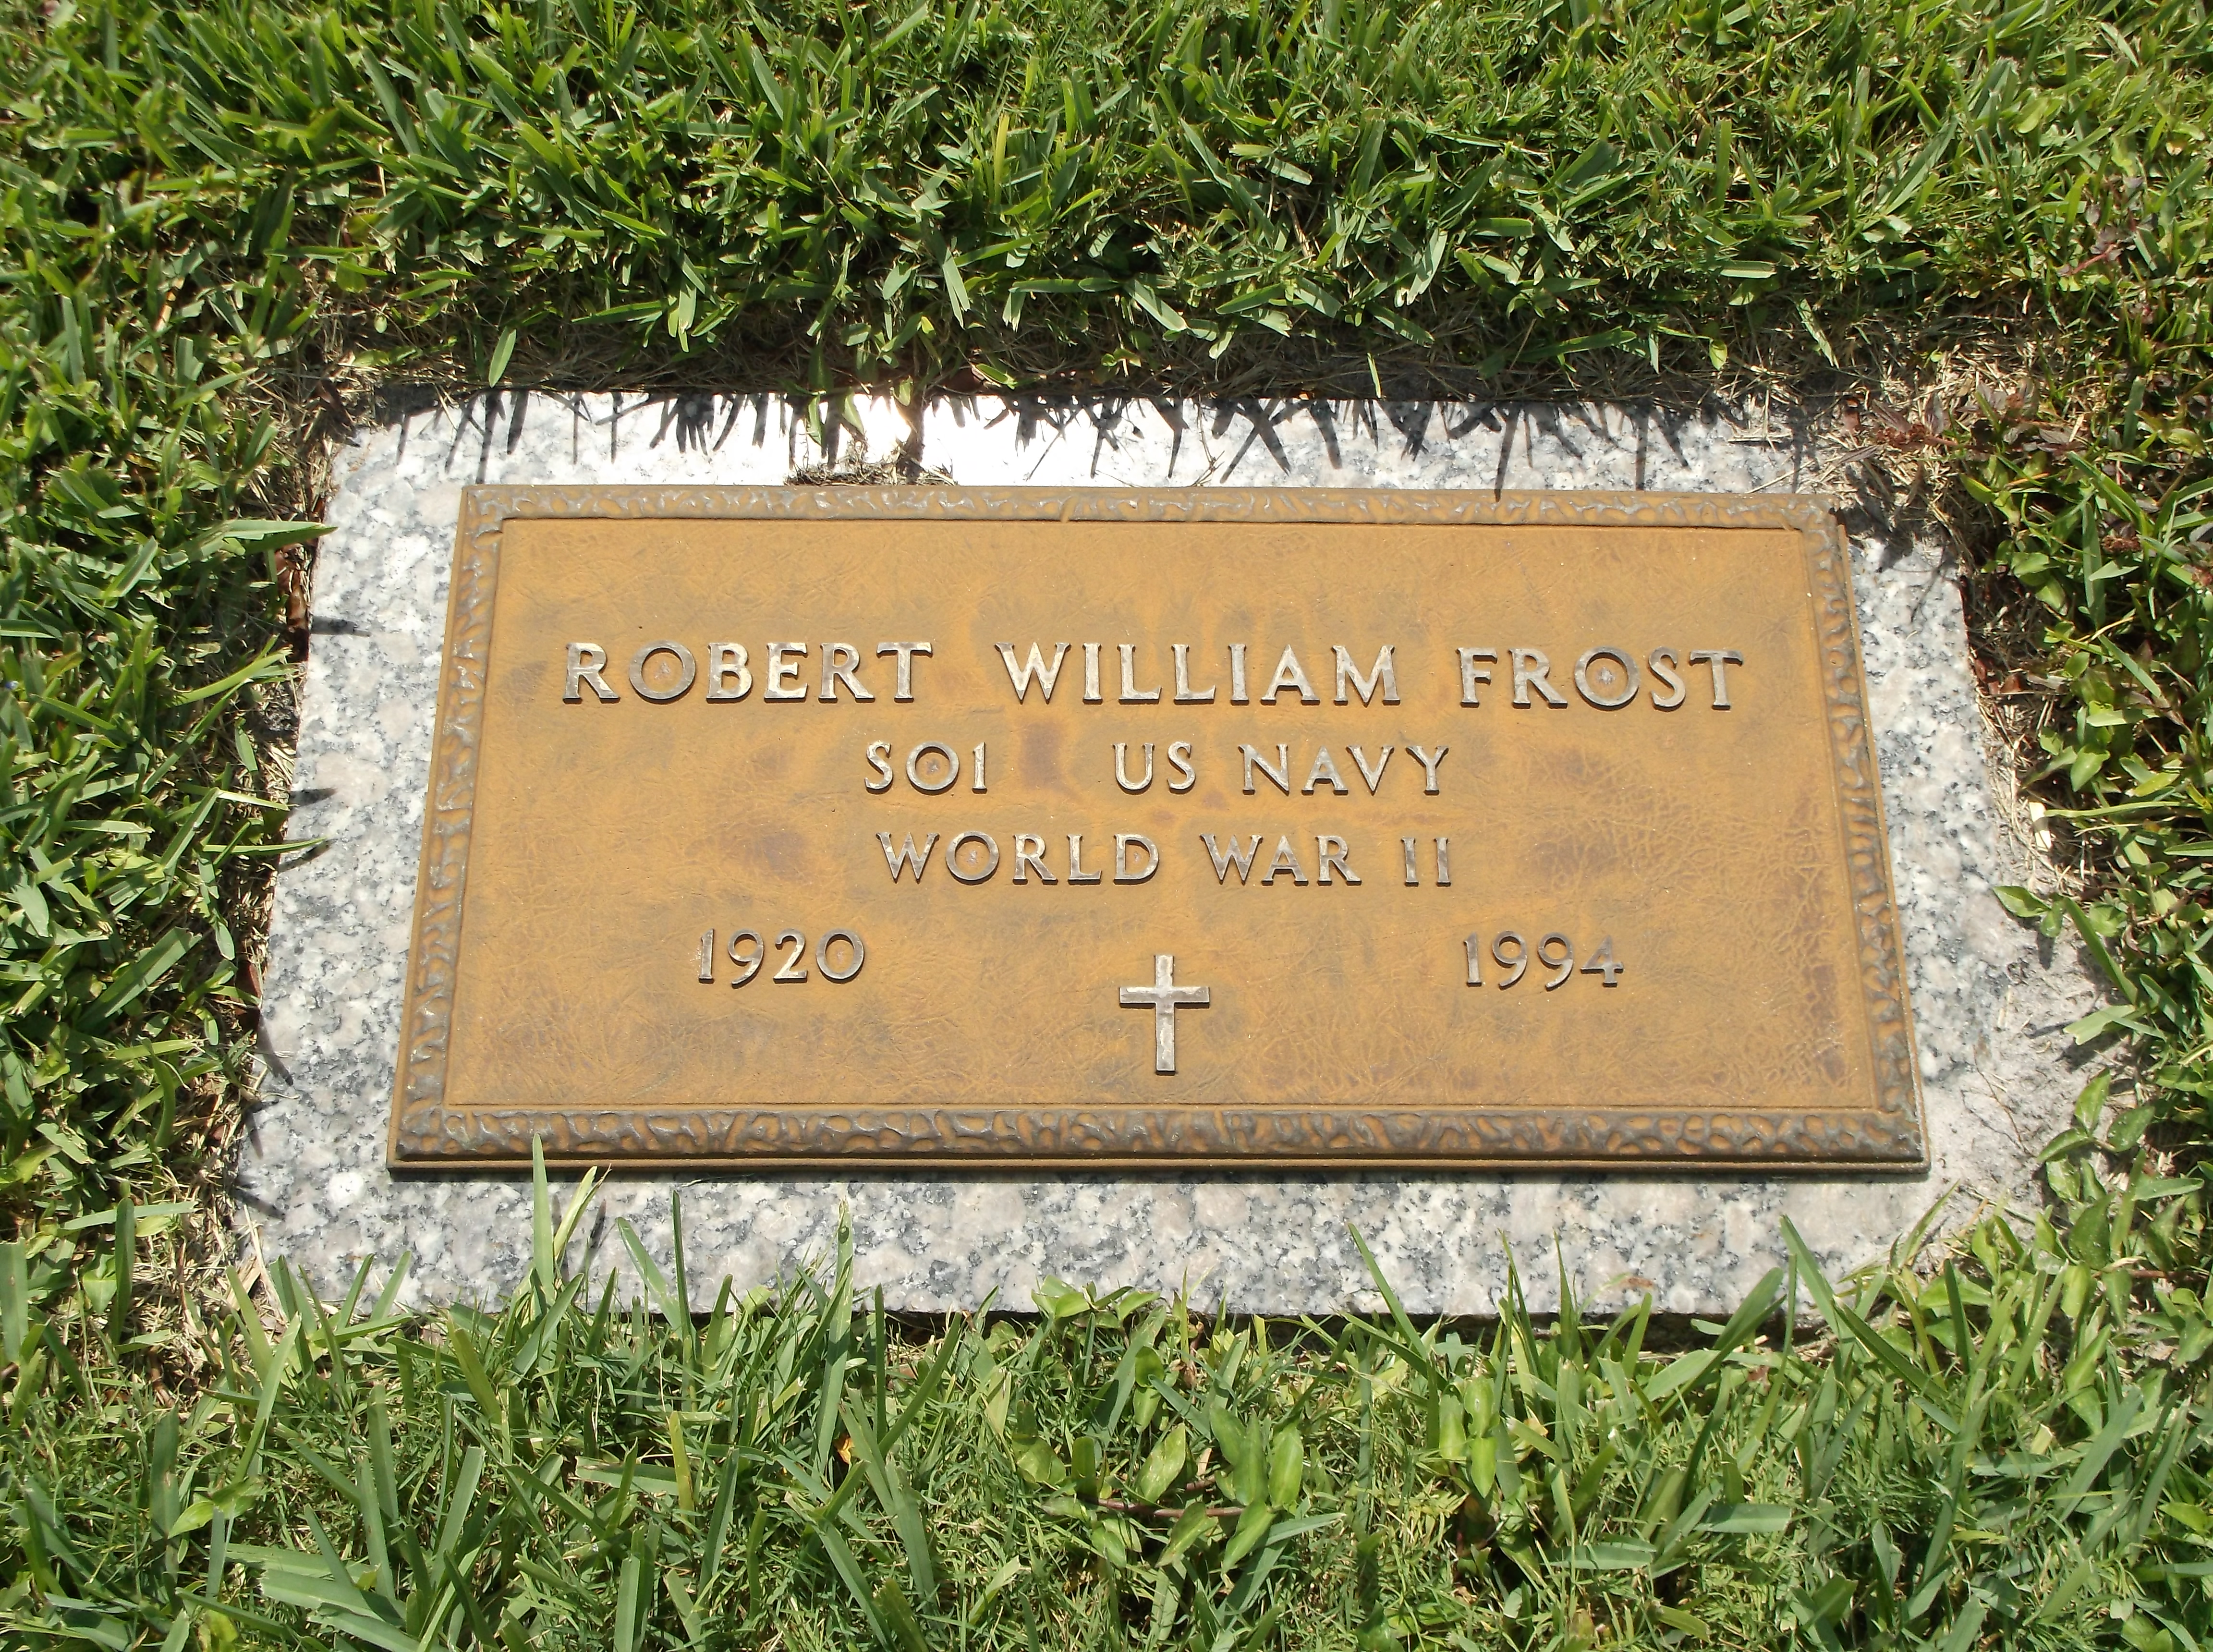 Robert William Frost